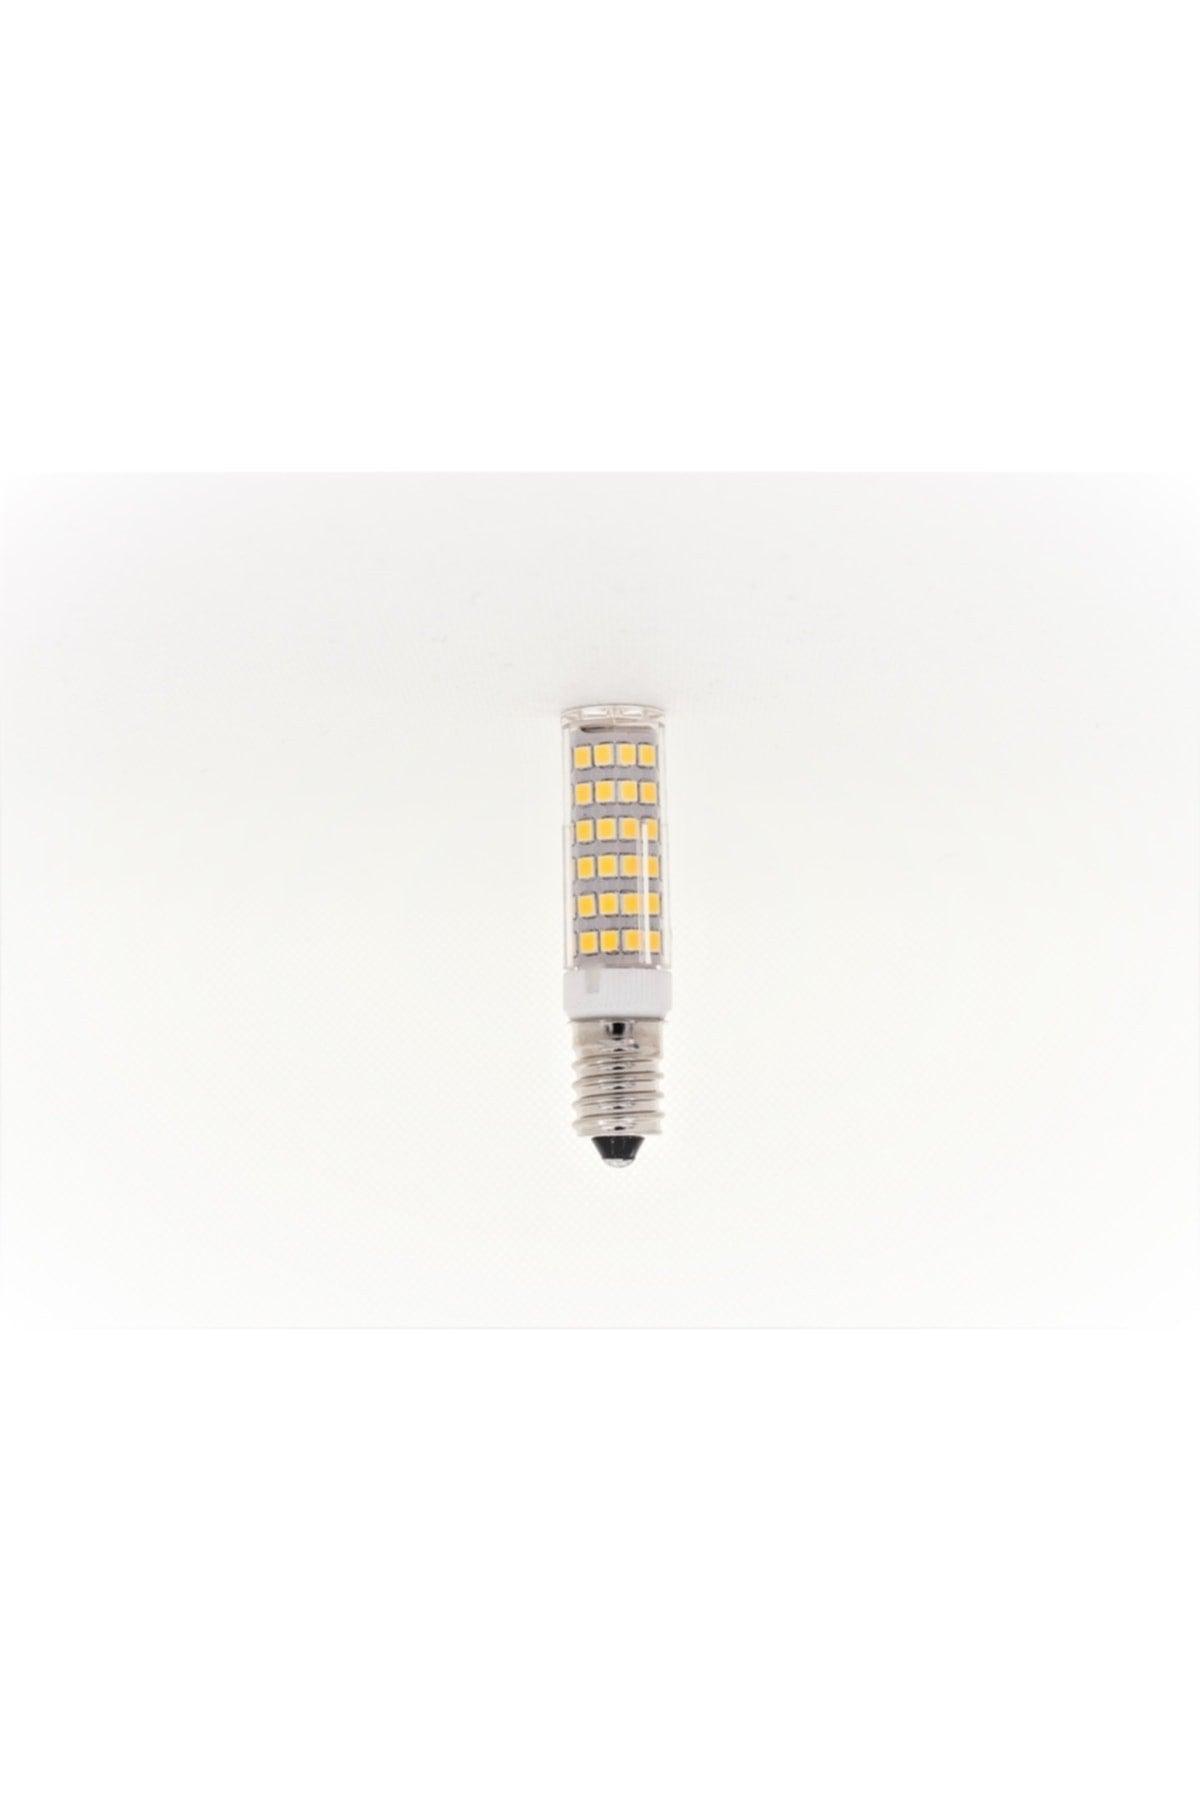 (10pcs) 220v E14 7w Capsule Led Bulb Daylight